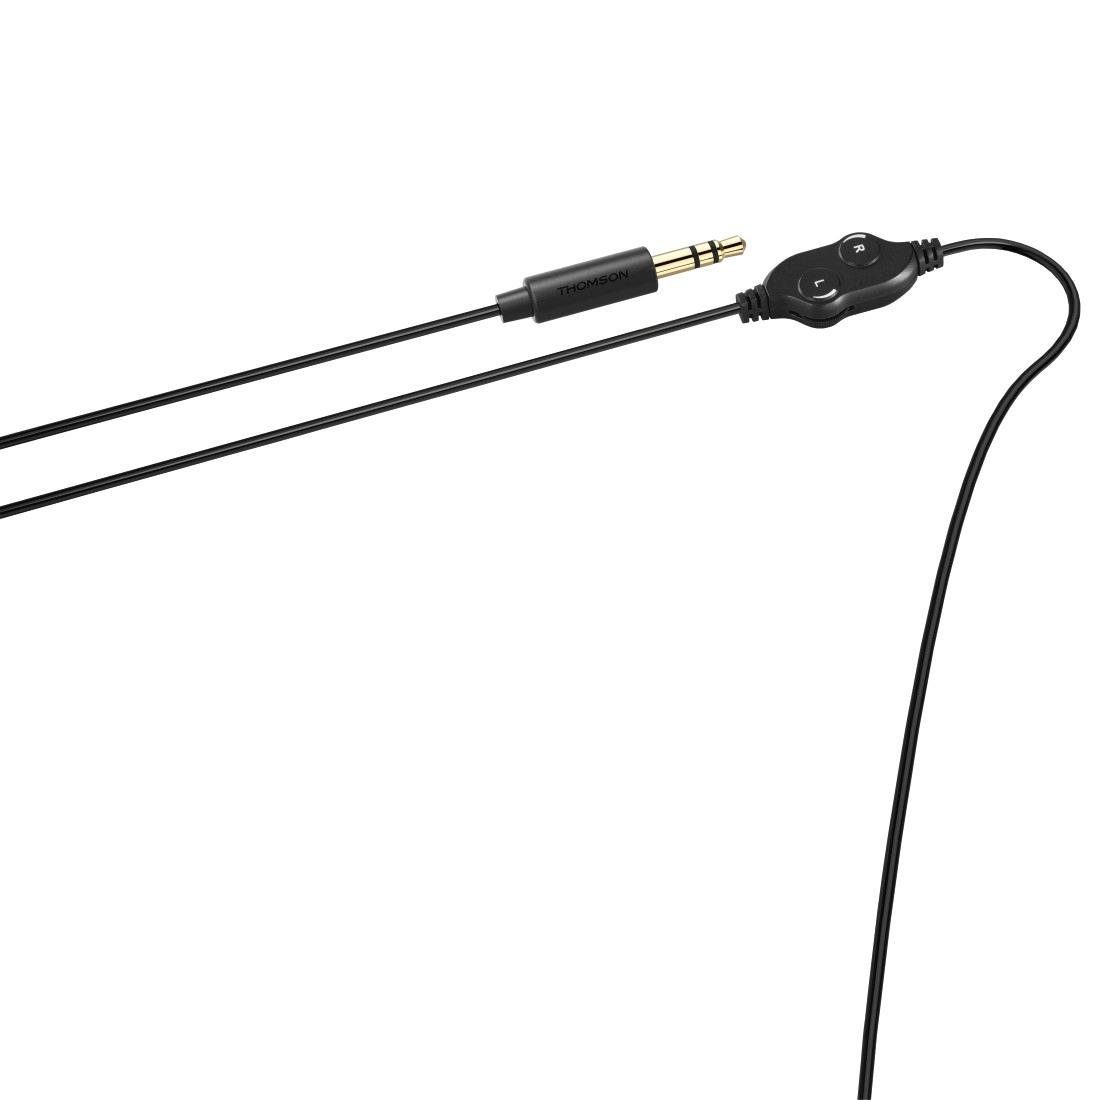 Mikrofon, Over-Ear Lautstärkeregler, und Kopfbügel) Headset Ohrmuscheln langes mit (2 Seniorenkopfhörer, TV On-Ear-Kopfhörer Thomson gepolsterte Kabel